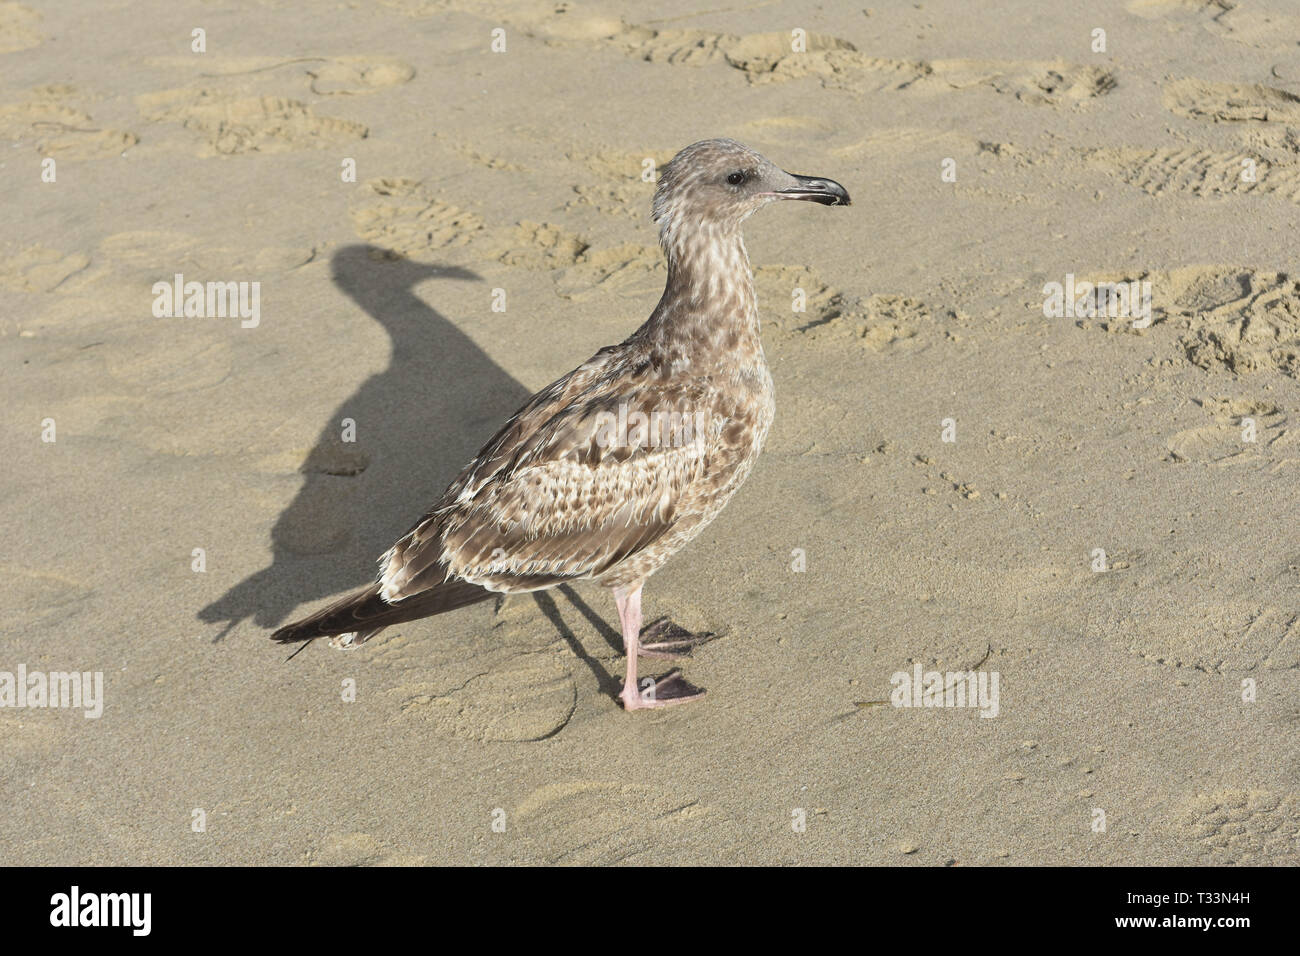 Jolie mouette gris marche autour de la plage de sable Banque D'Images